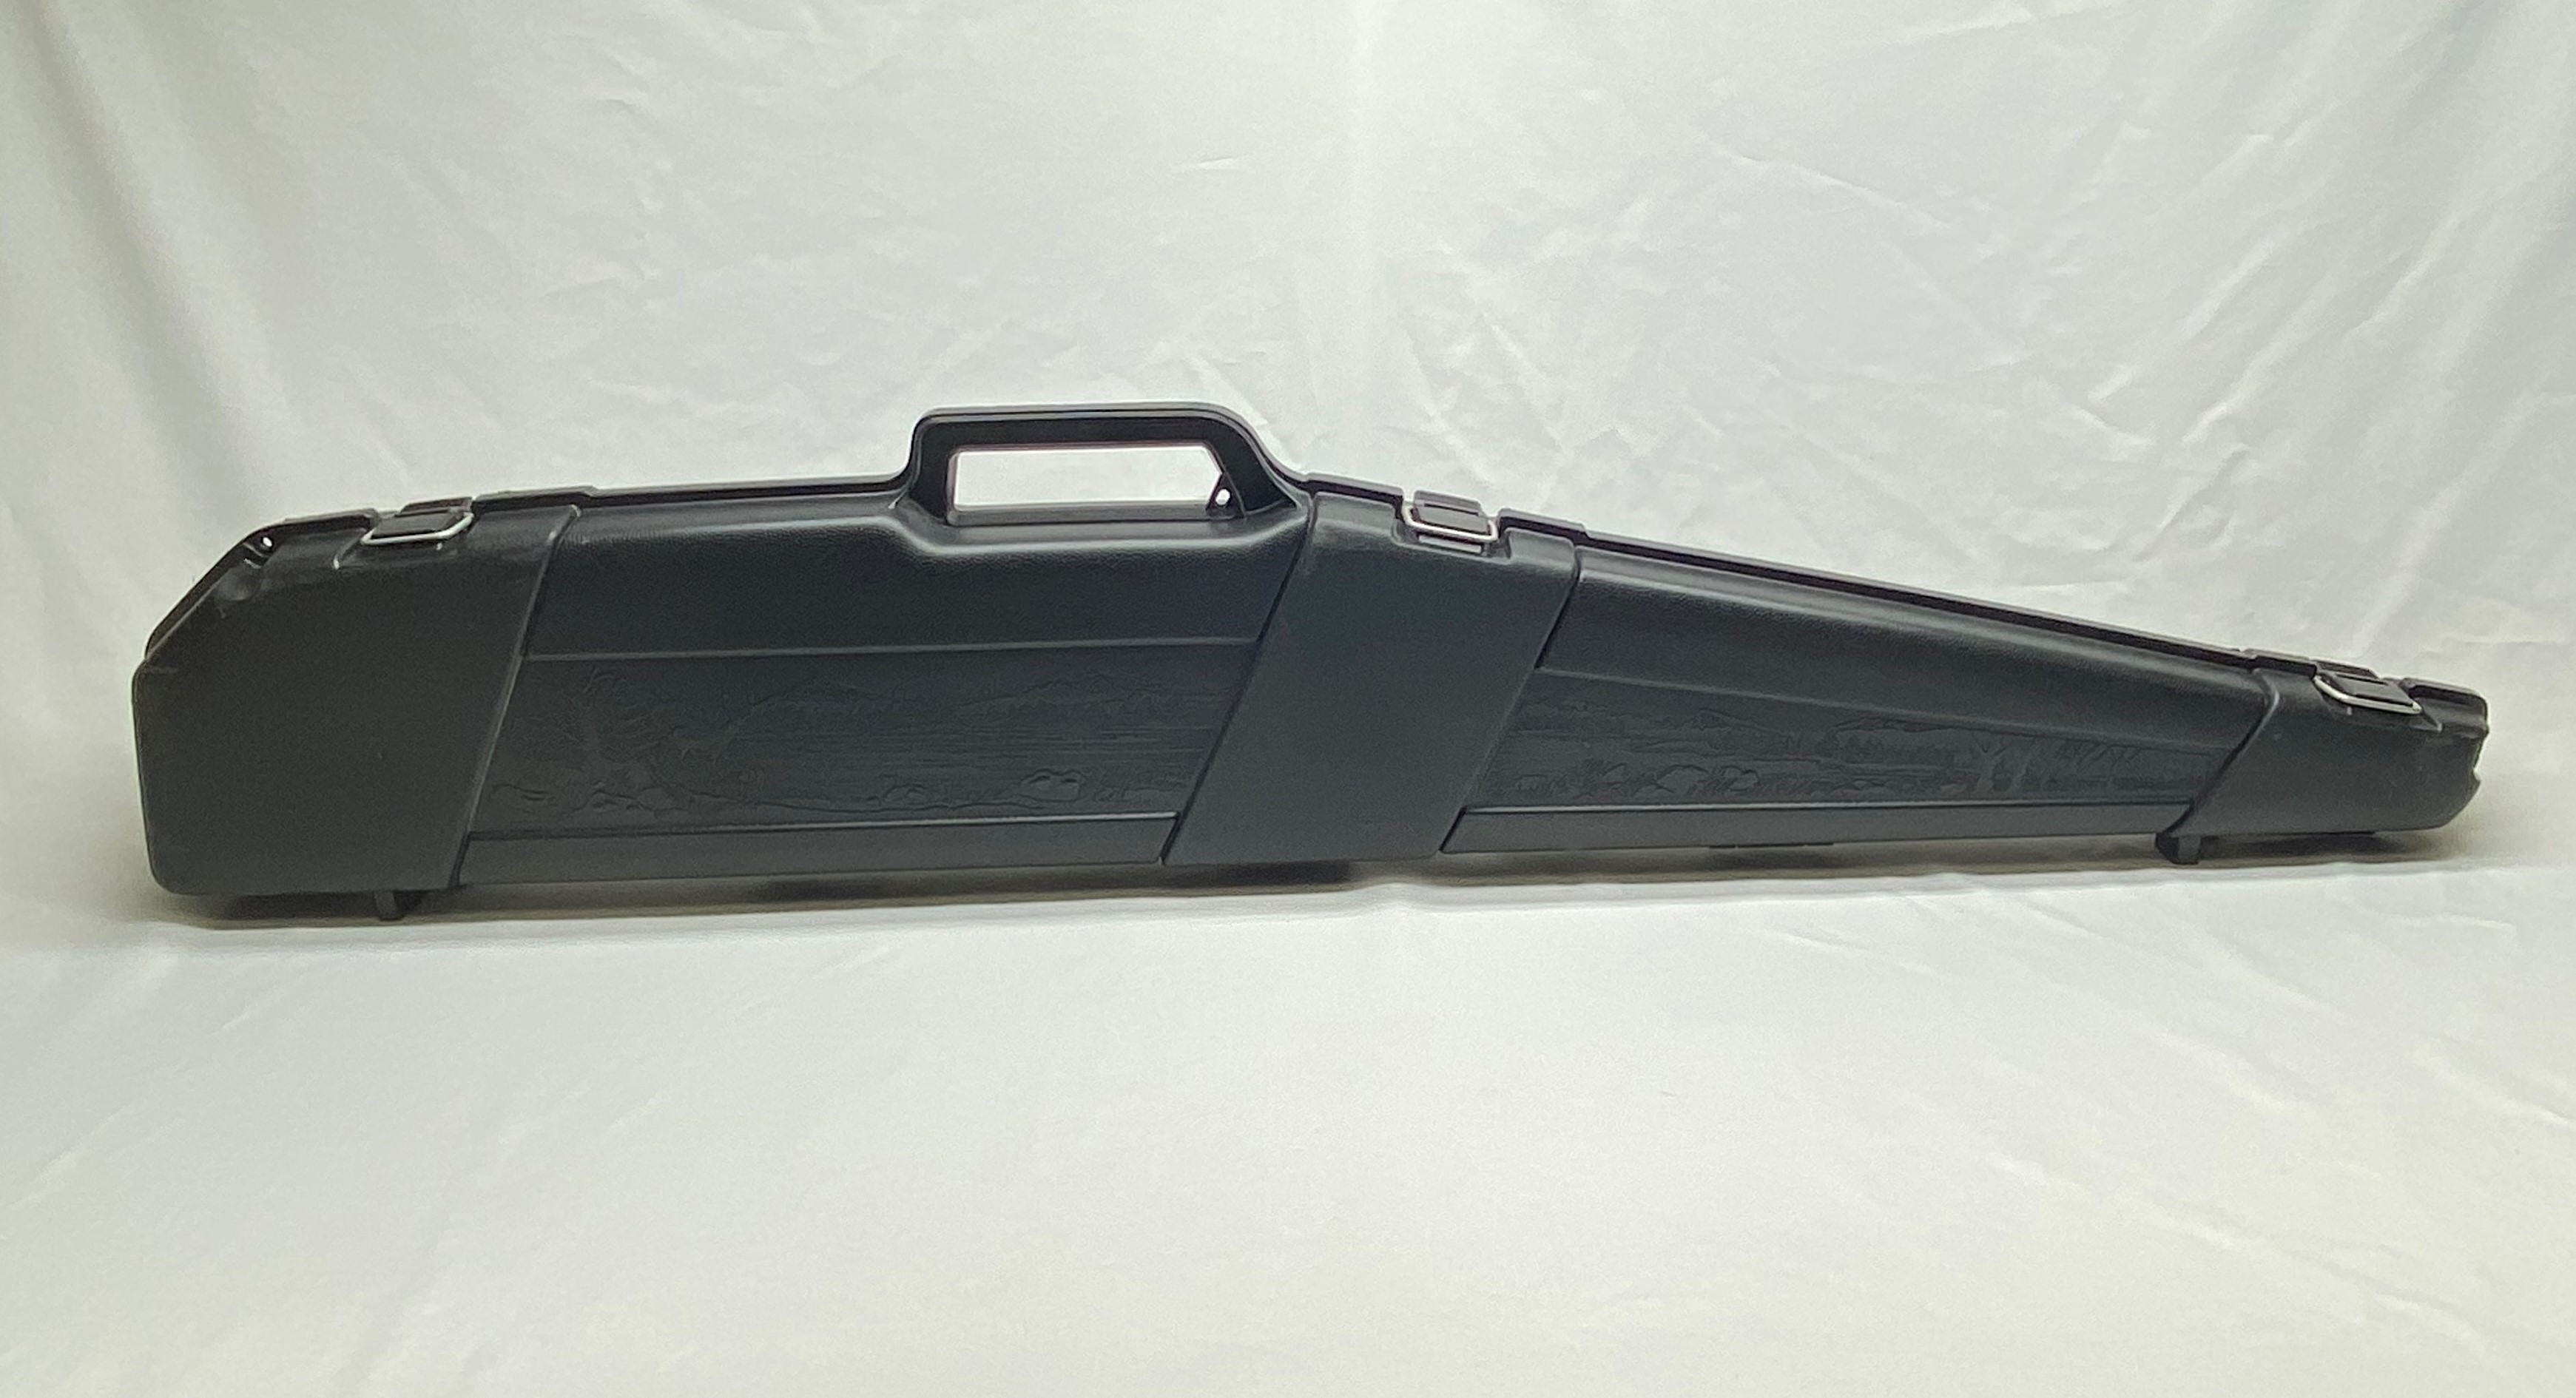 Plano Mil-Spec Field Locker Double Long Gun Case with Wheels